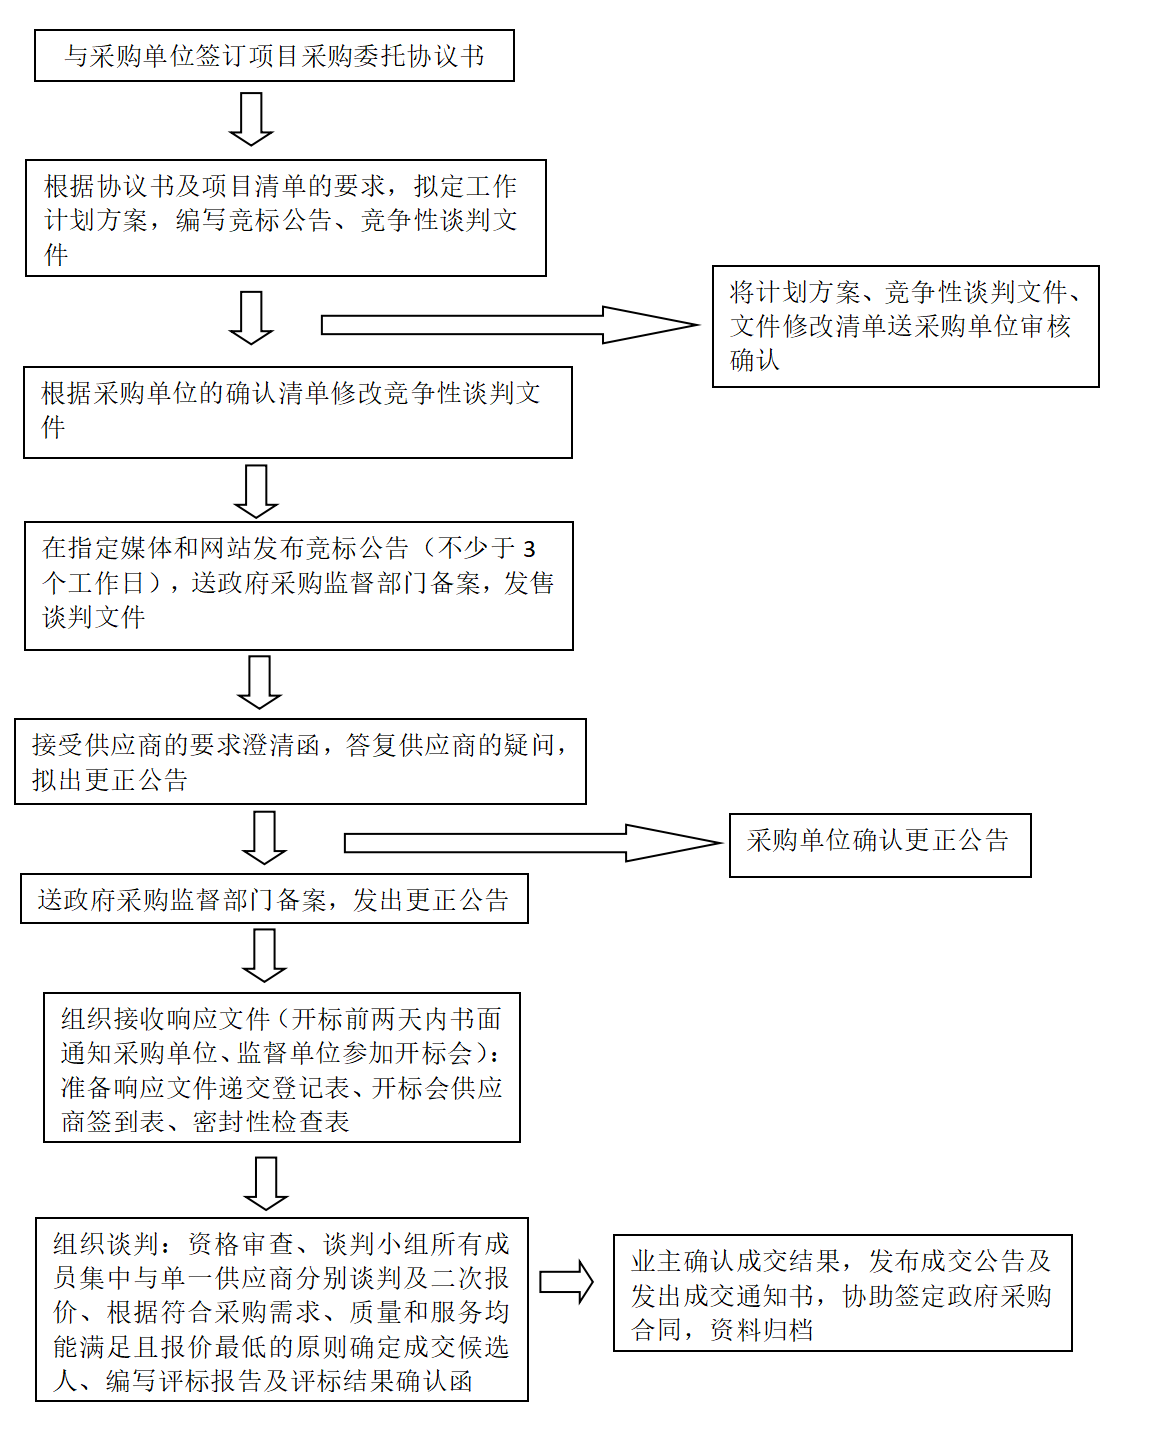 竞争性谈判工作流程(图1)